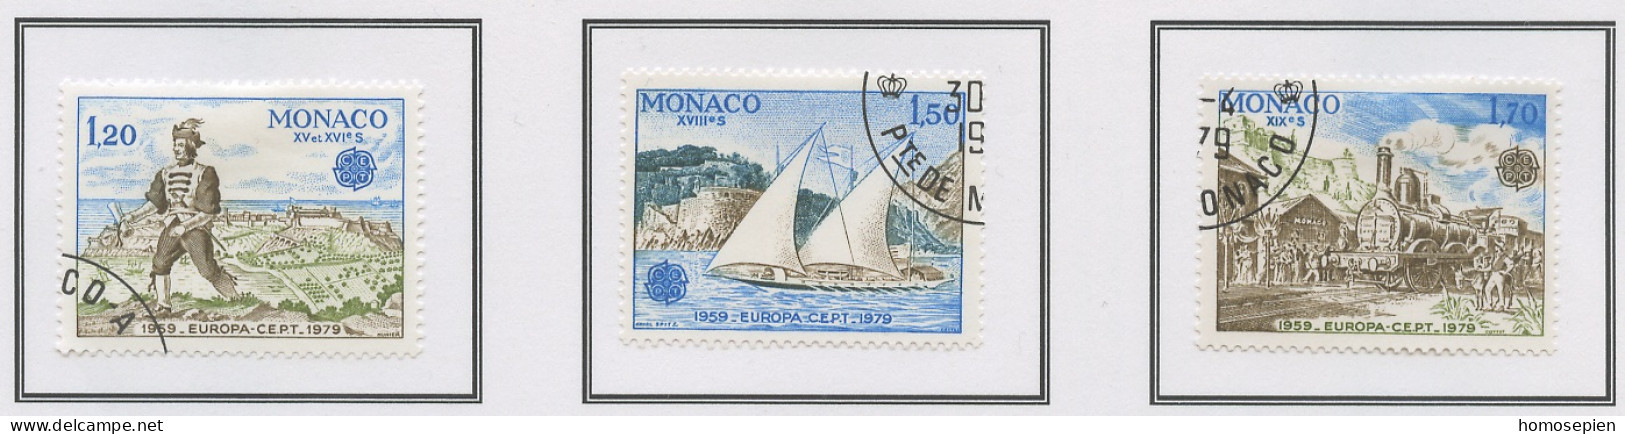 Europa CEPT 1979 Monaco Y&T N°1186 à 1188 - Michel N°1375A à 1377A (o) - K13 - 1979